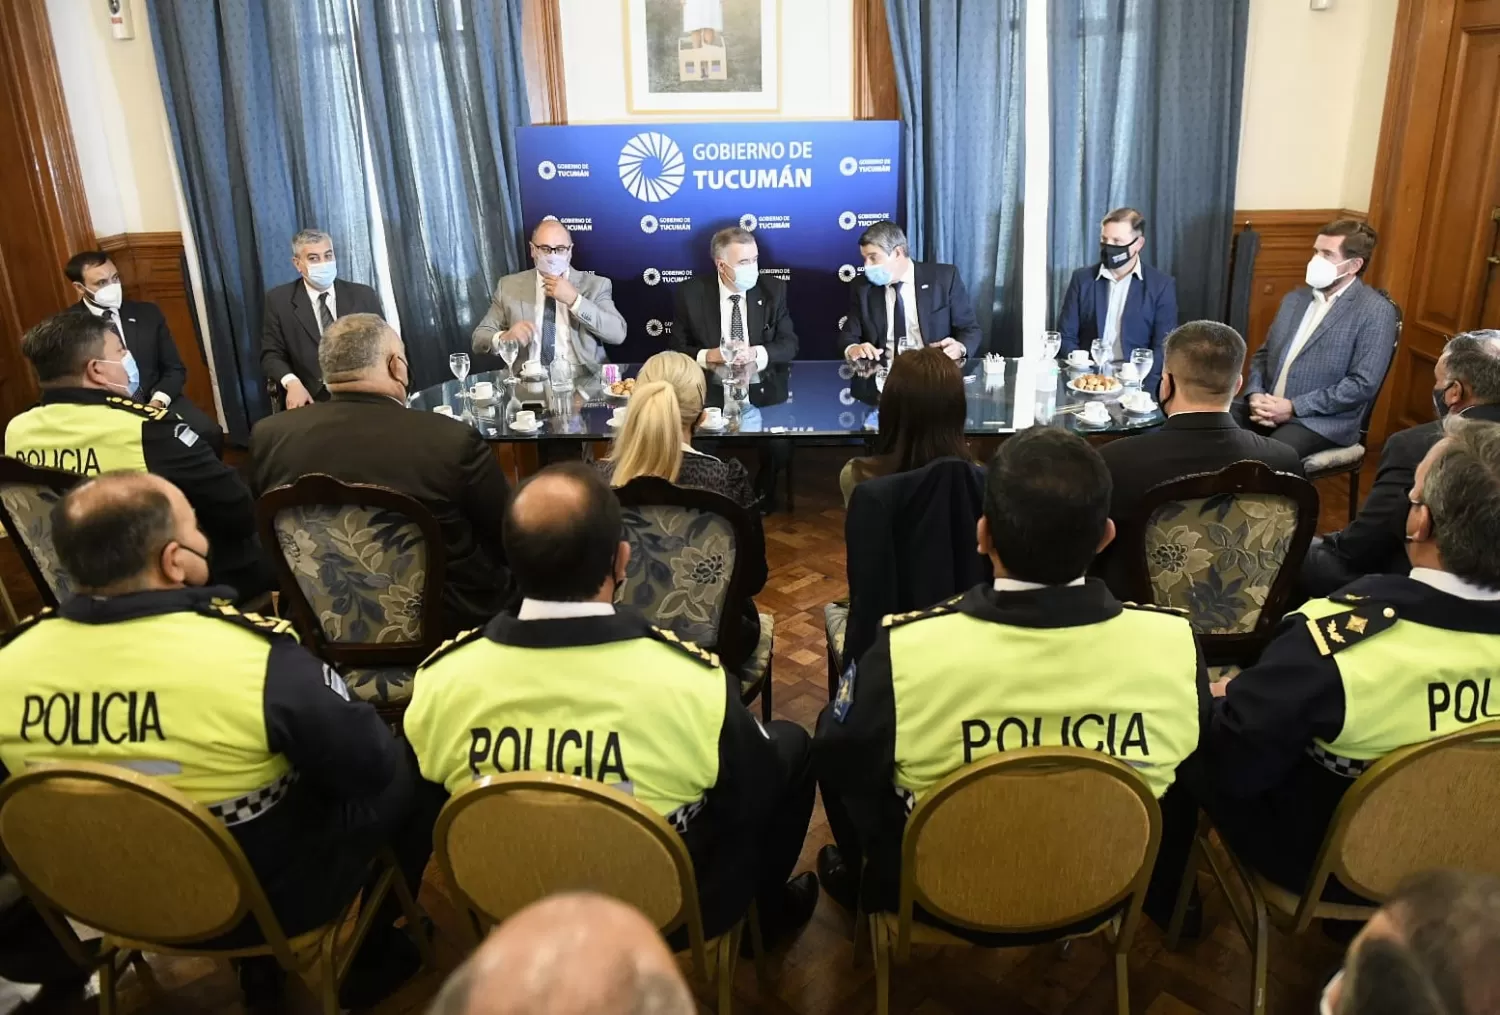 EN CASA DE GOBIERNO. Osvaldo Jaldo, junto al ministro Maley y otros funcionarios del área de seguridad. Foto: Prensa Oficial